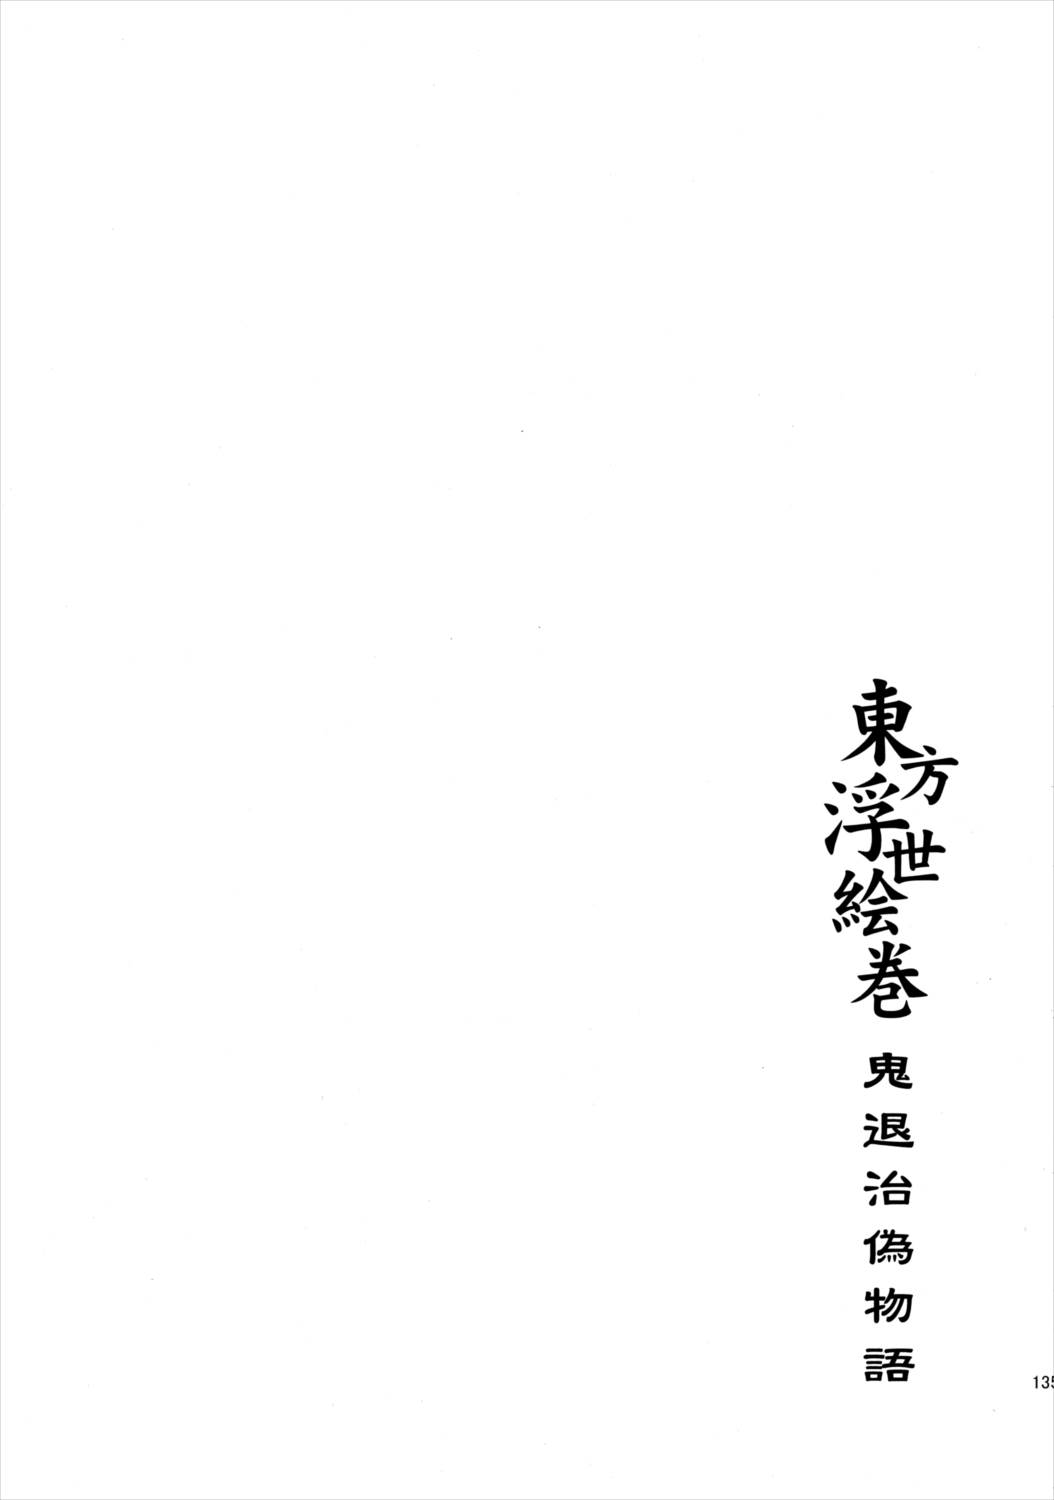 東方浮世絵巻 再録集2 134ページ